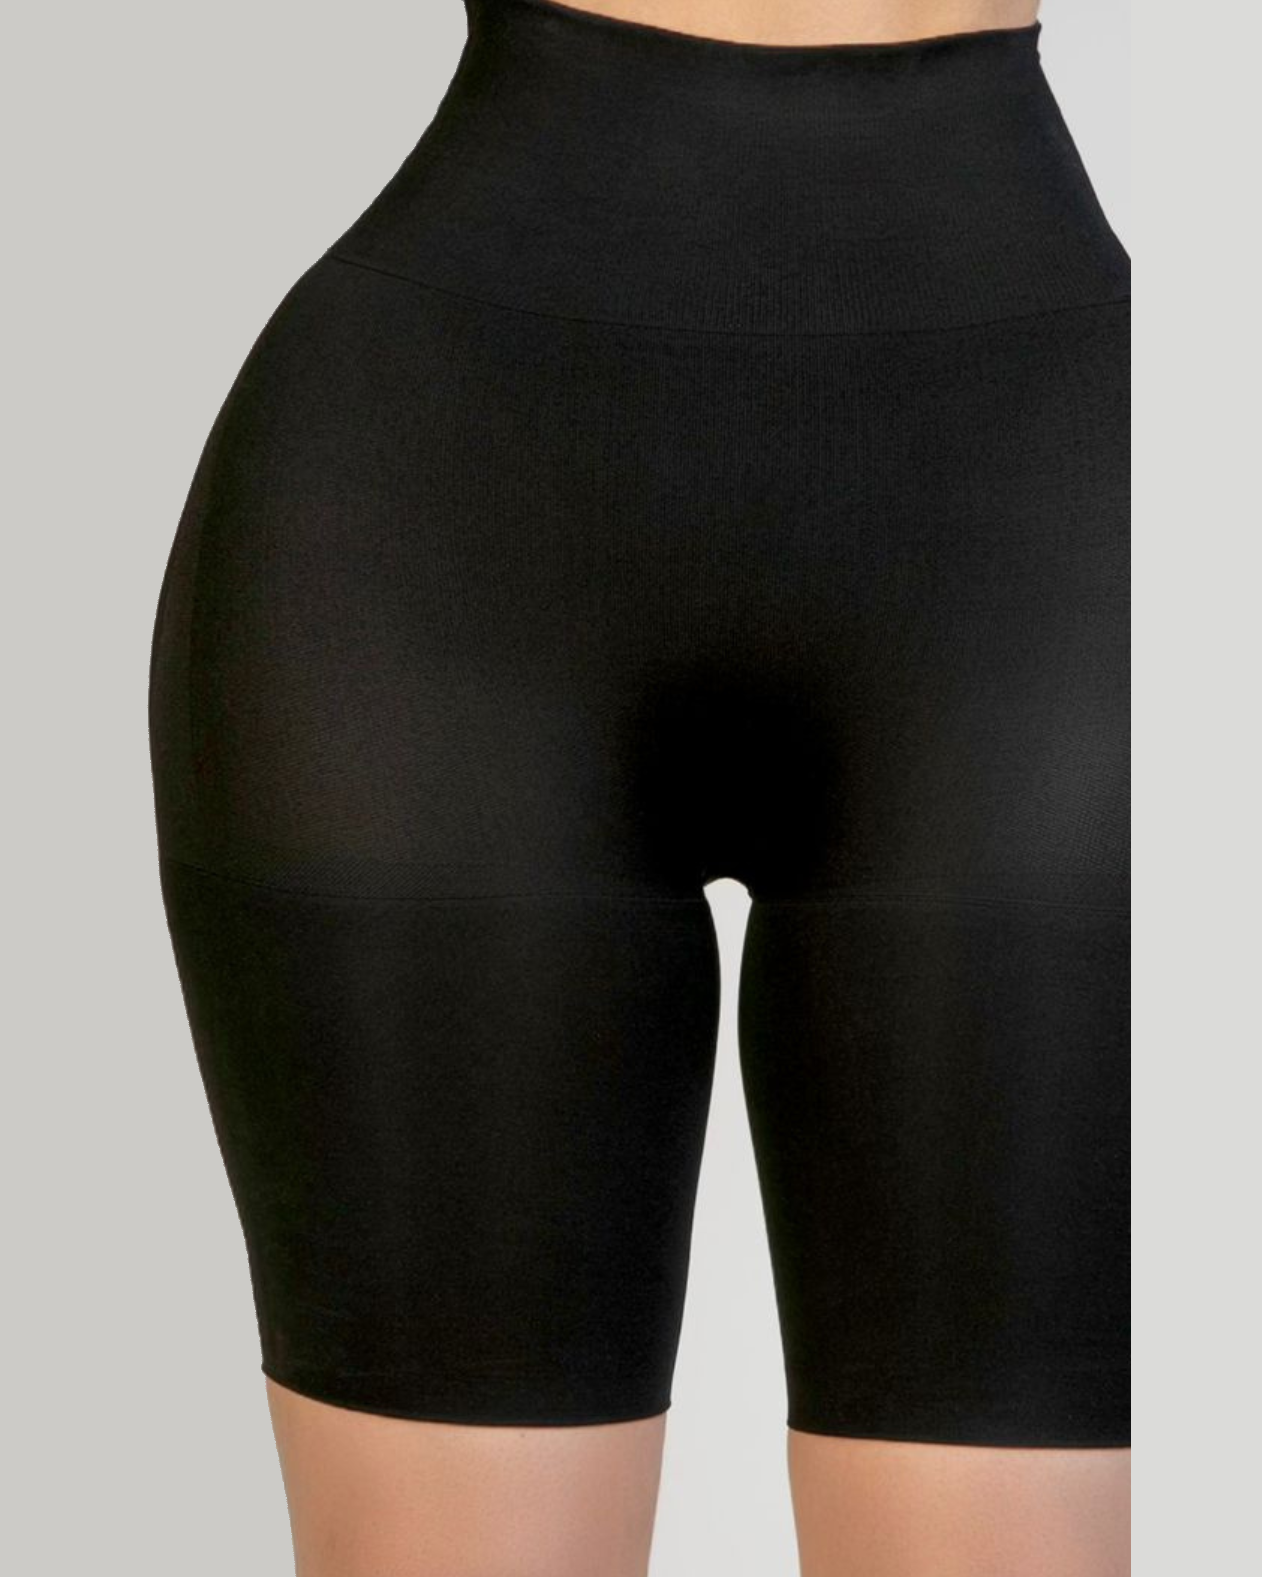 Seamless High Waist Butt Lifter Shaper Shorts Invisible